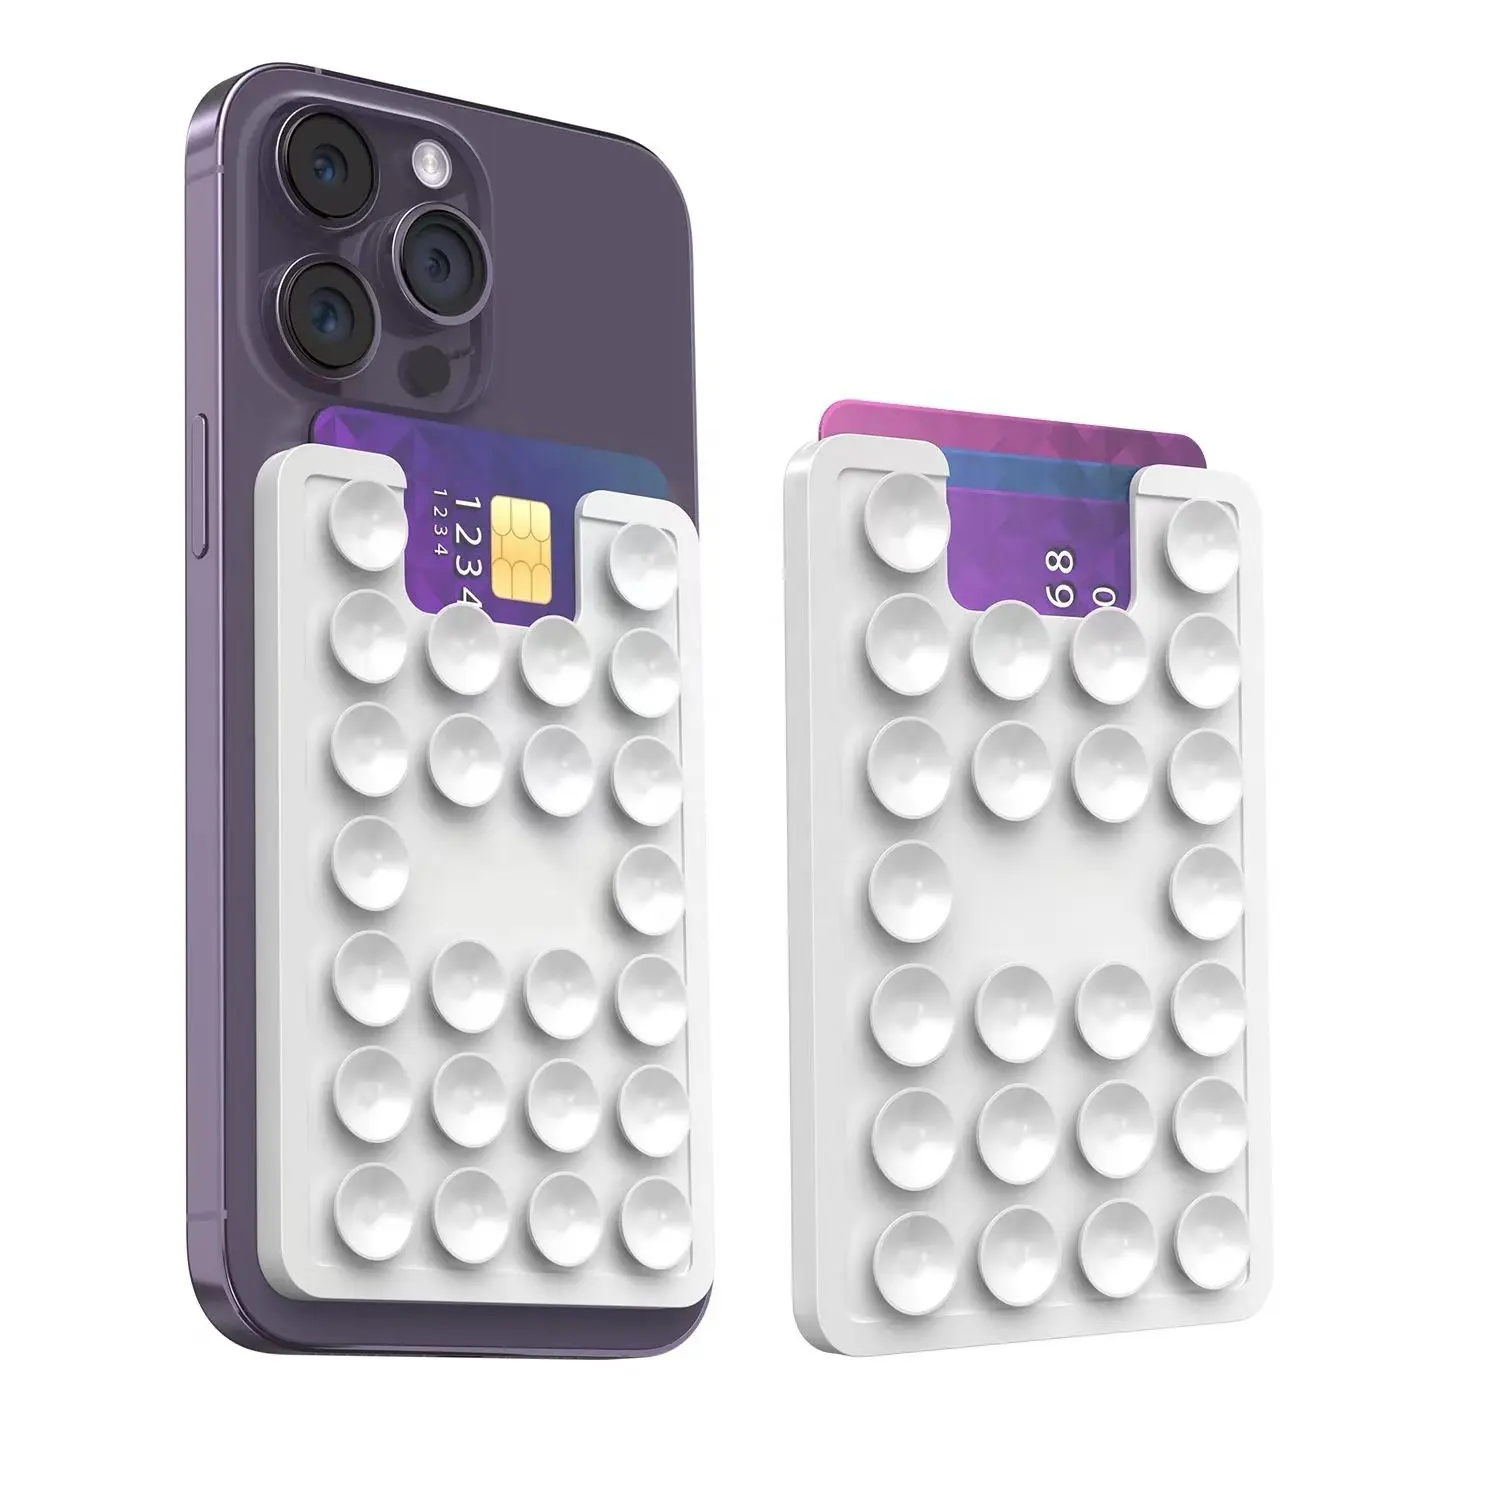 24 rettangolari in Silicone per cellulare cellulare con ventosa adesiva porta mani libere per selfie e video antiscivolo tappetino per ventosa